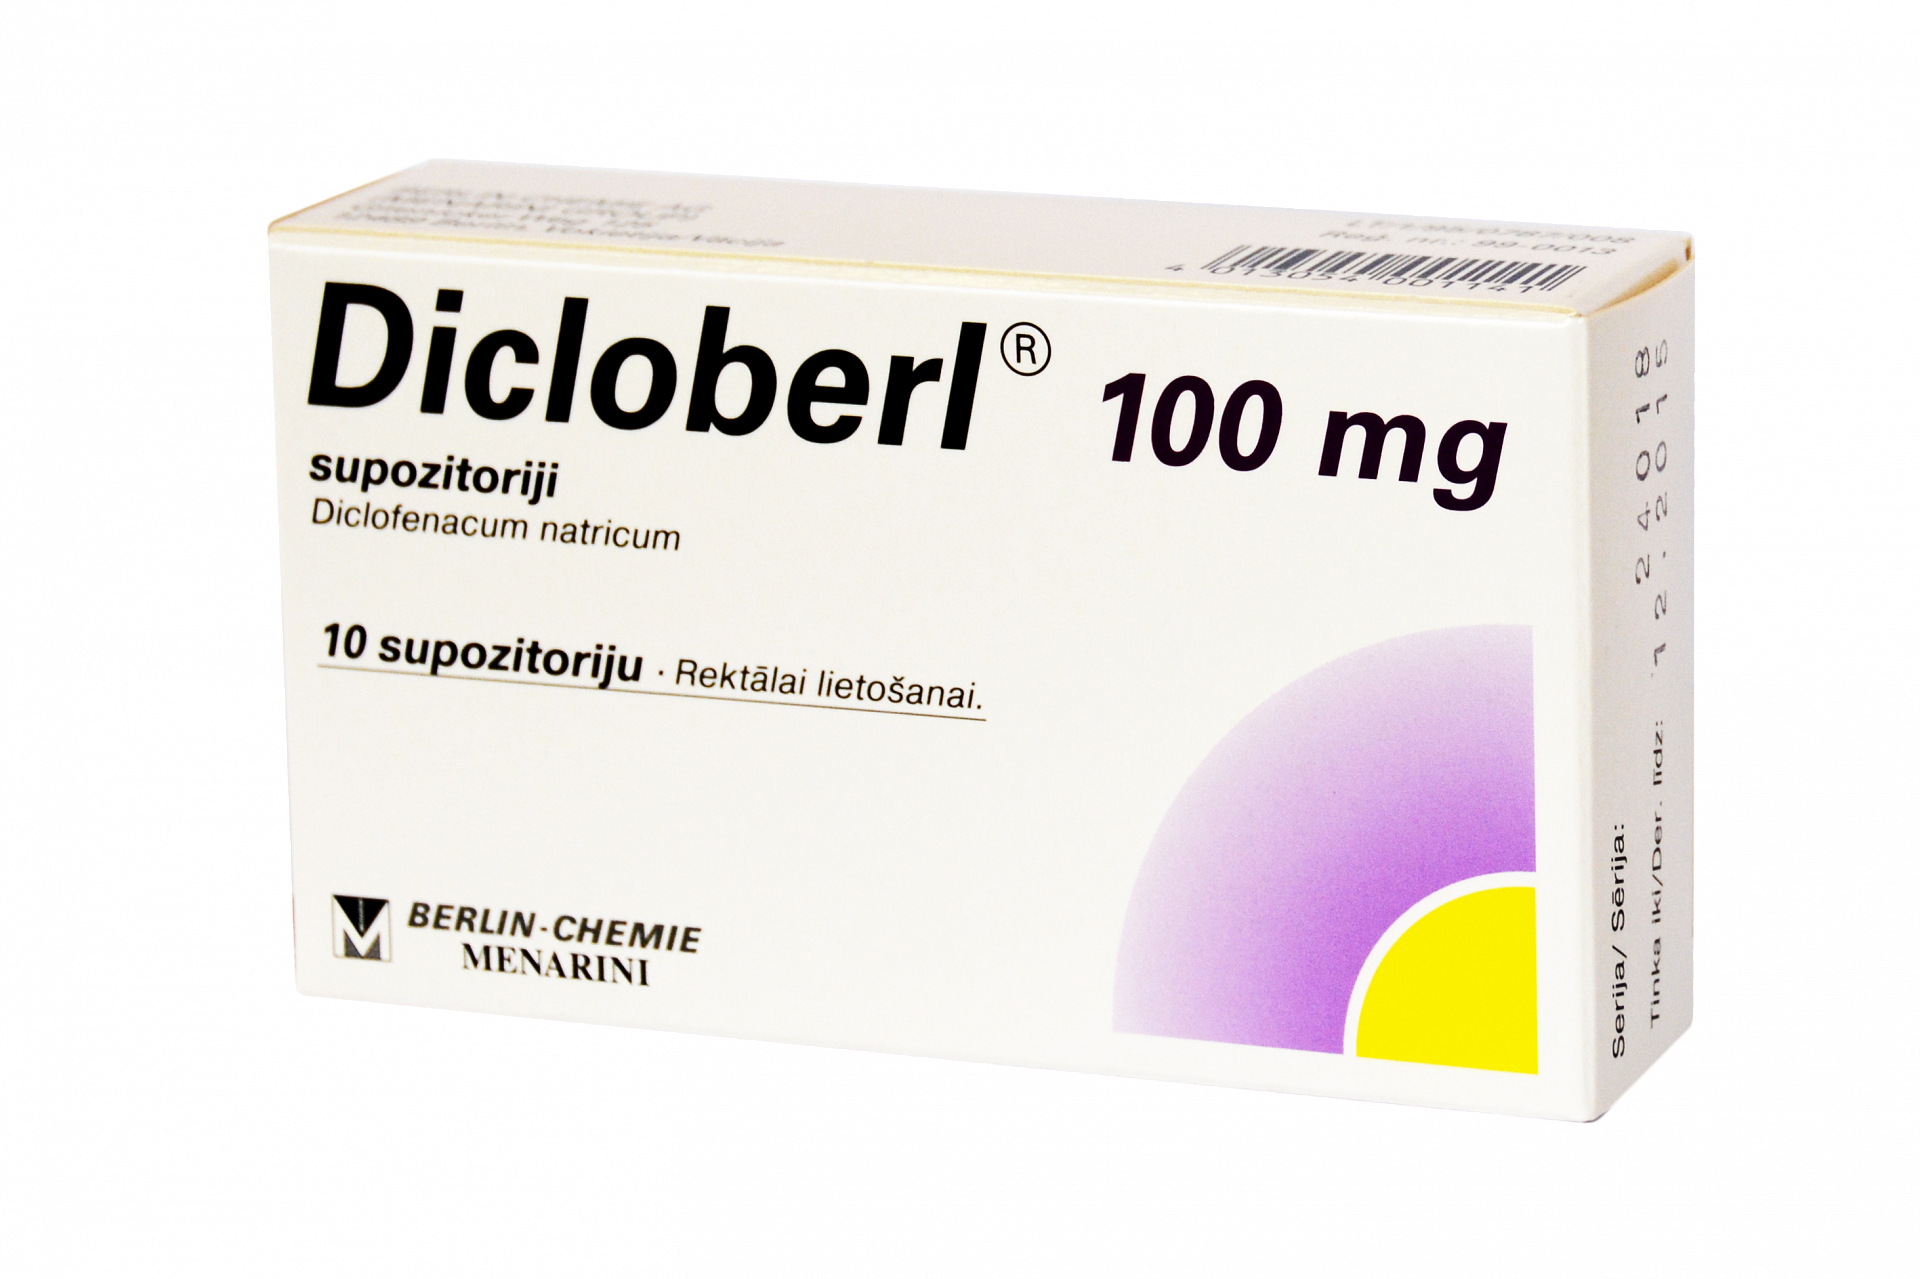 Dicloberl® - Liều dùng & Cách dùng thuốc an toàn 1